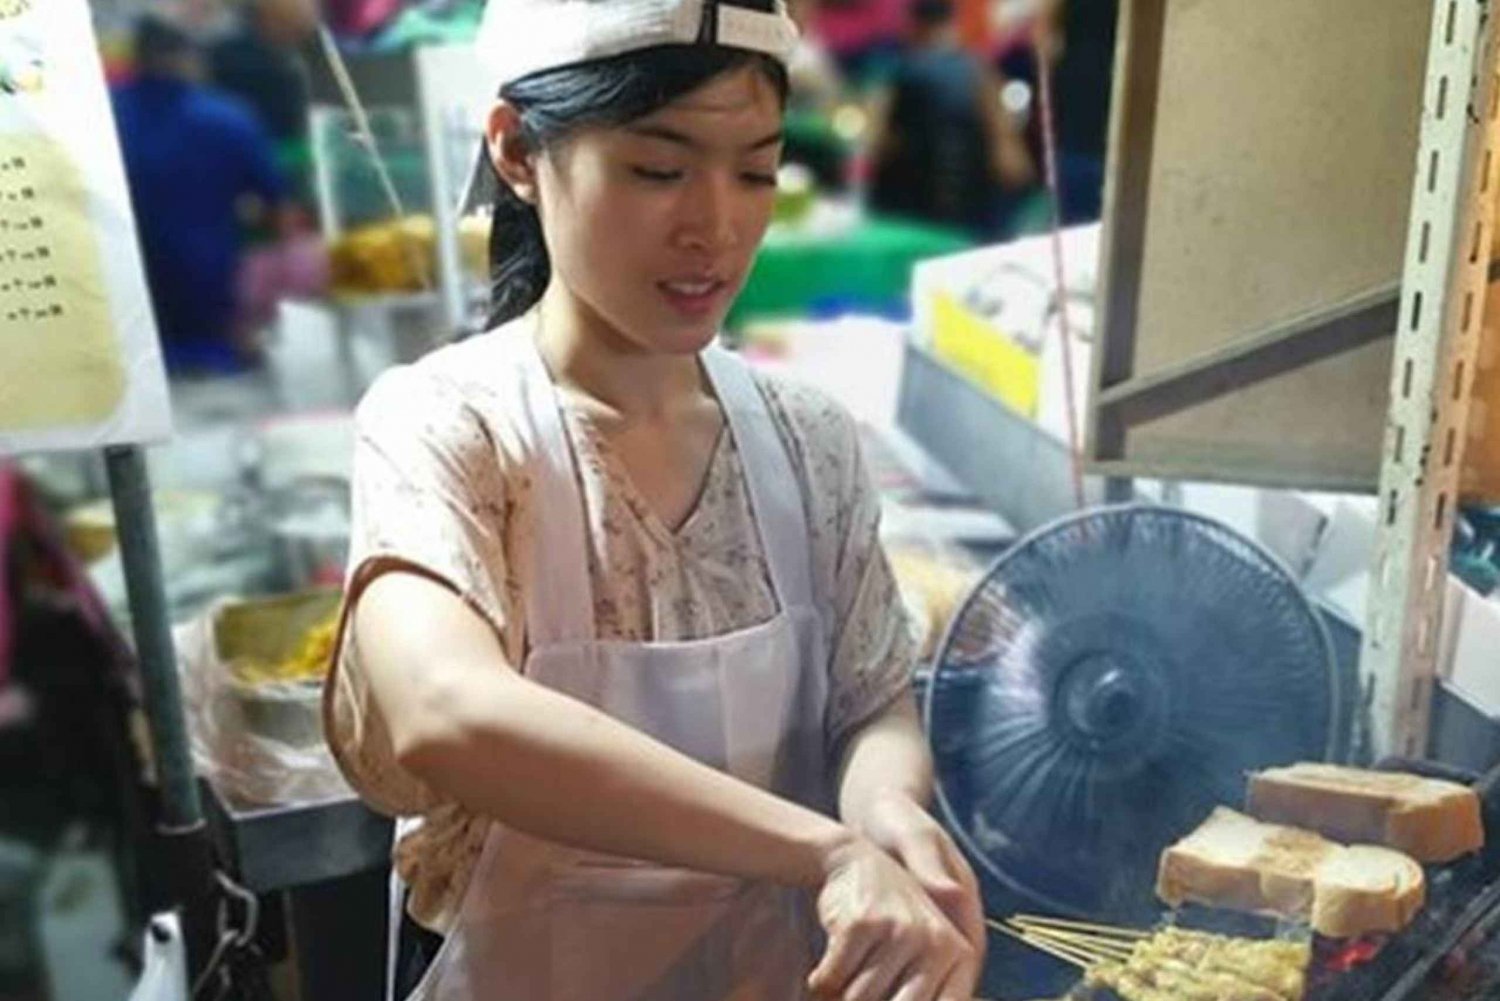 Bangkok: Tour gastronomico notturno con degustazione di cibo da strada